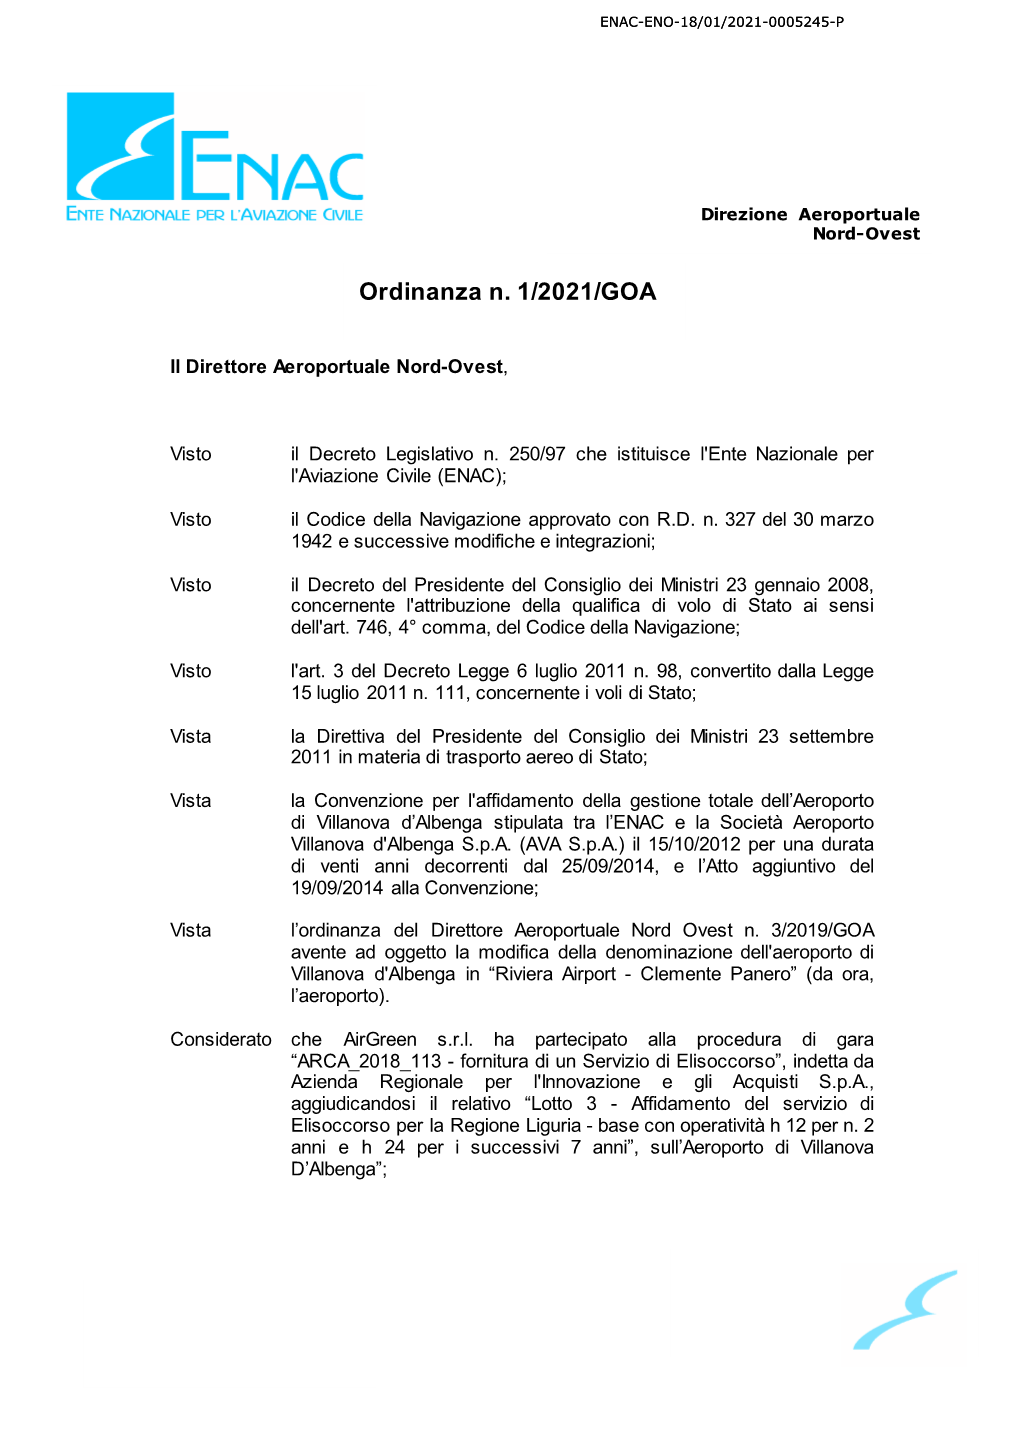 Ordinanza N. 1/2021/GOA